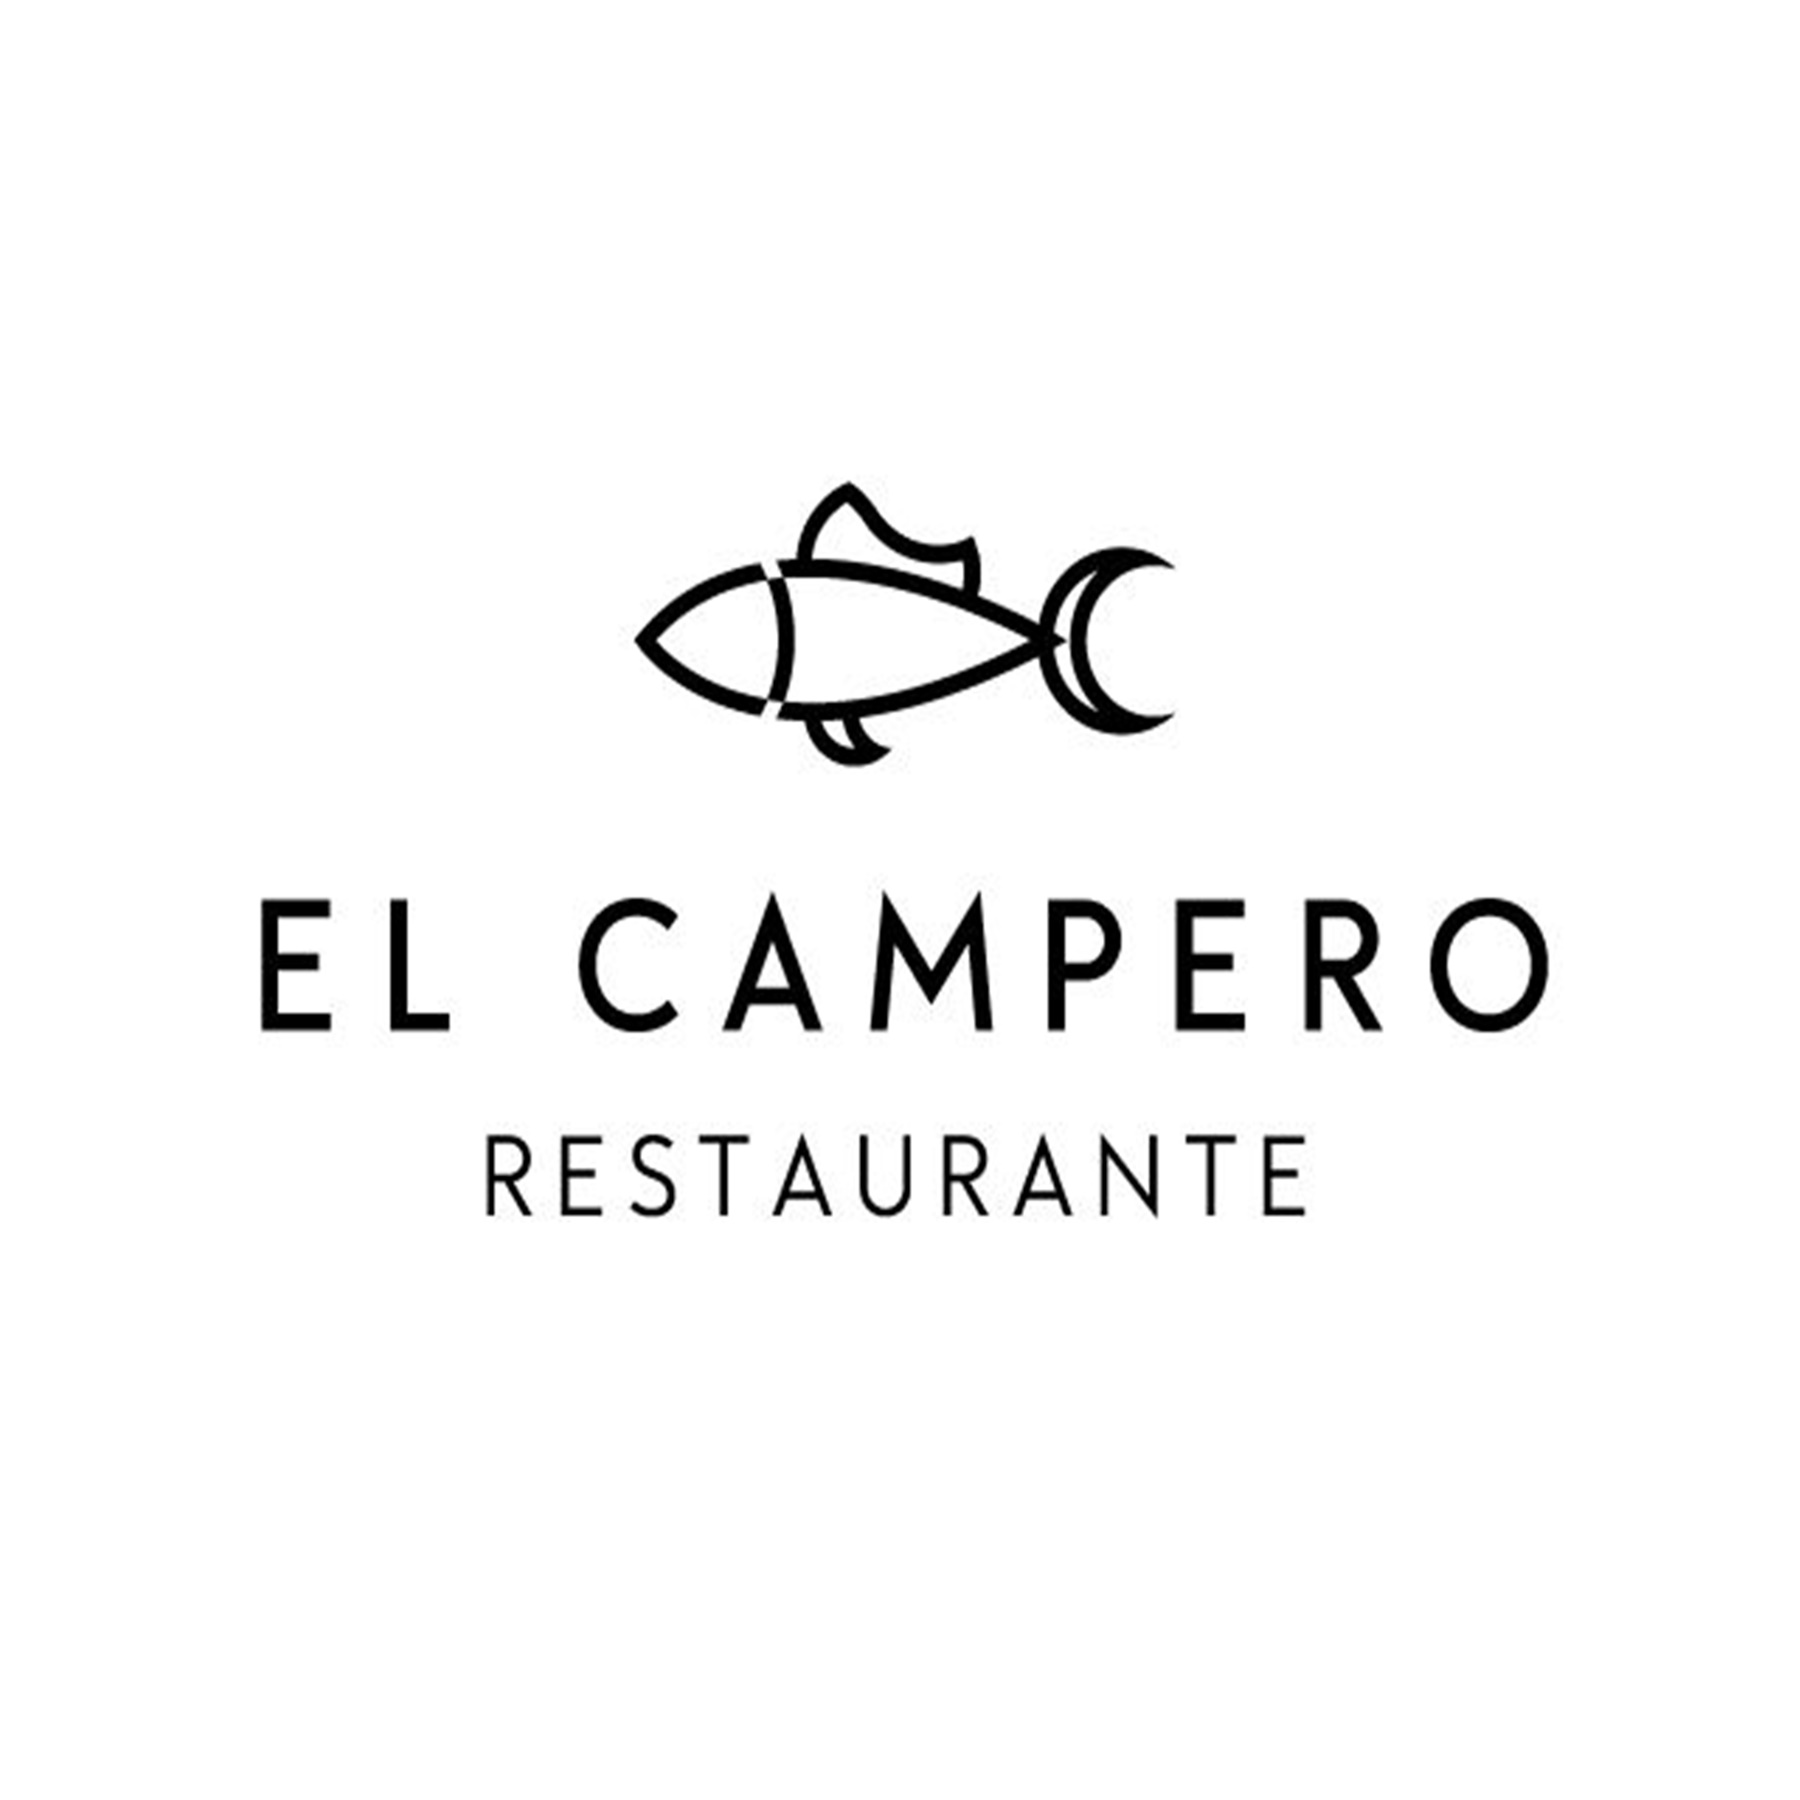 El Campero Restaurant